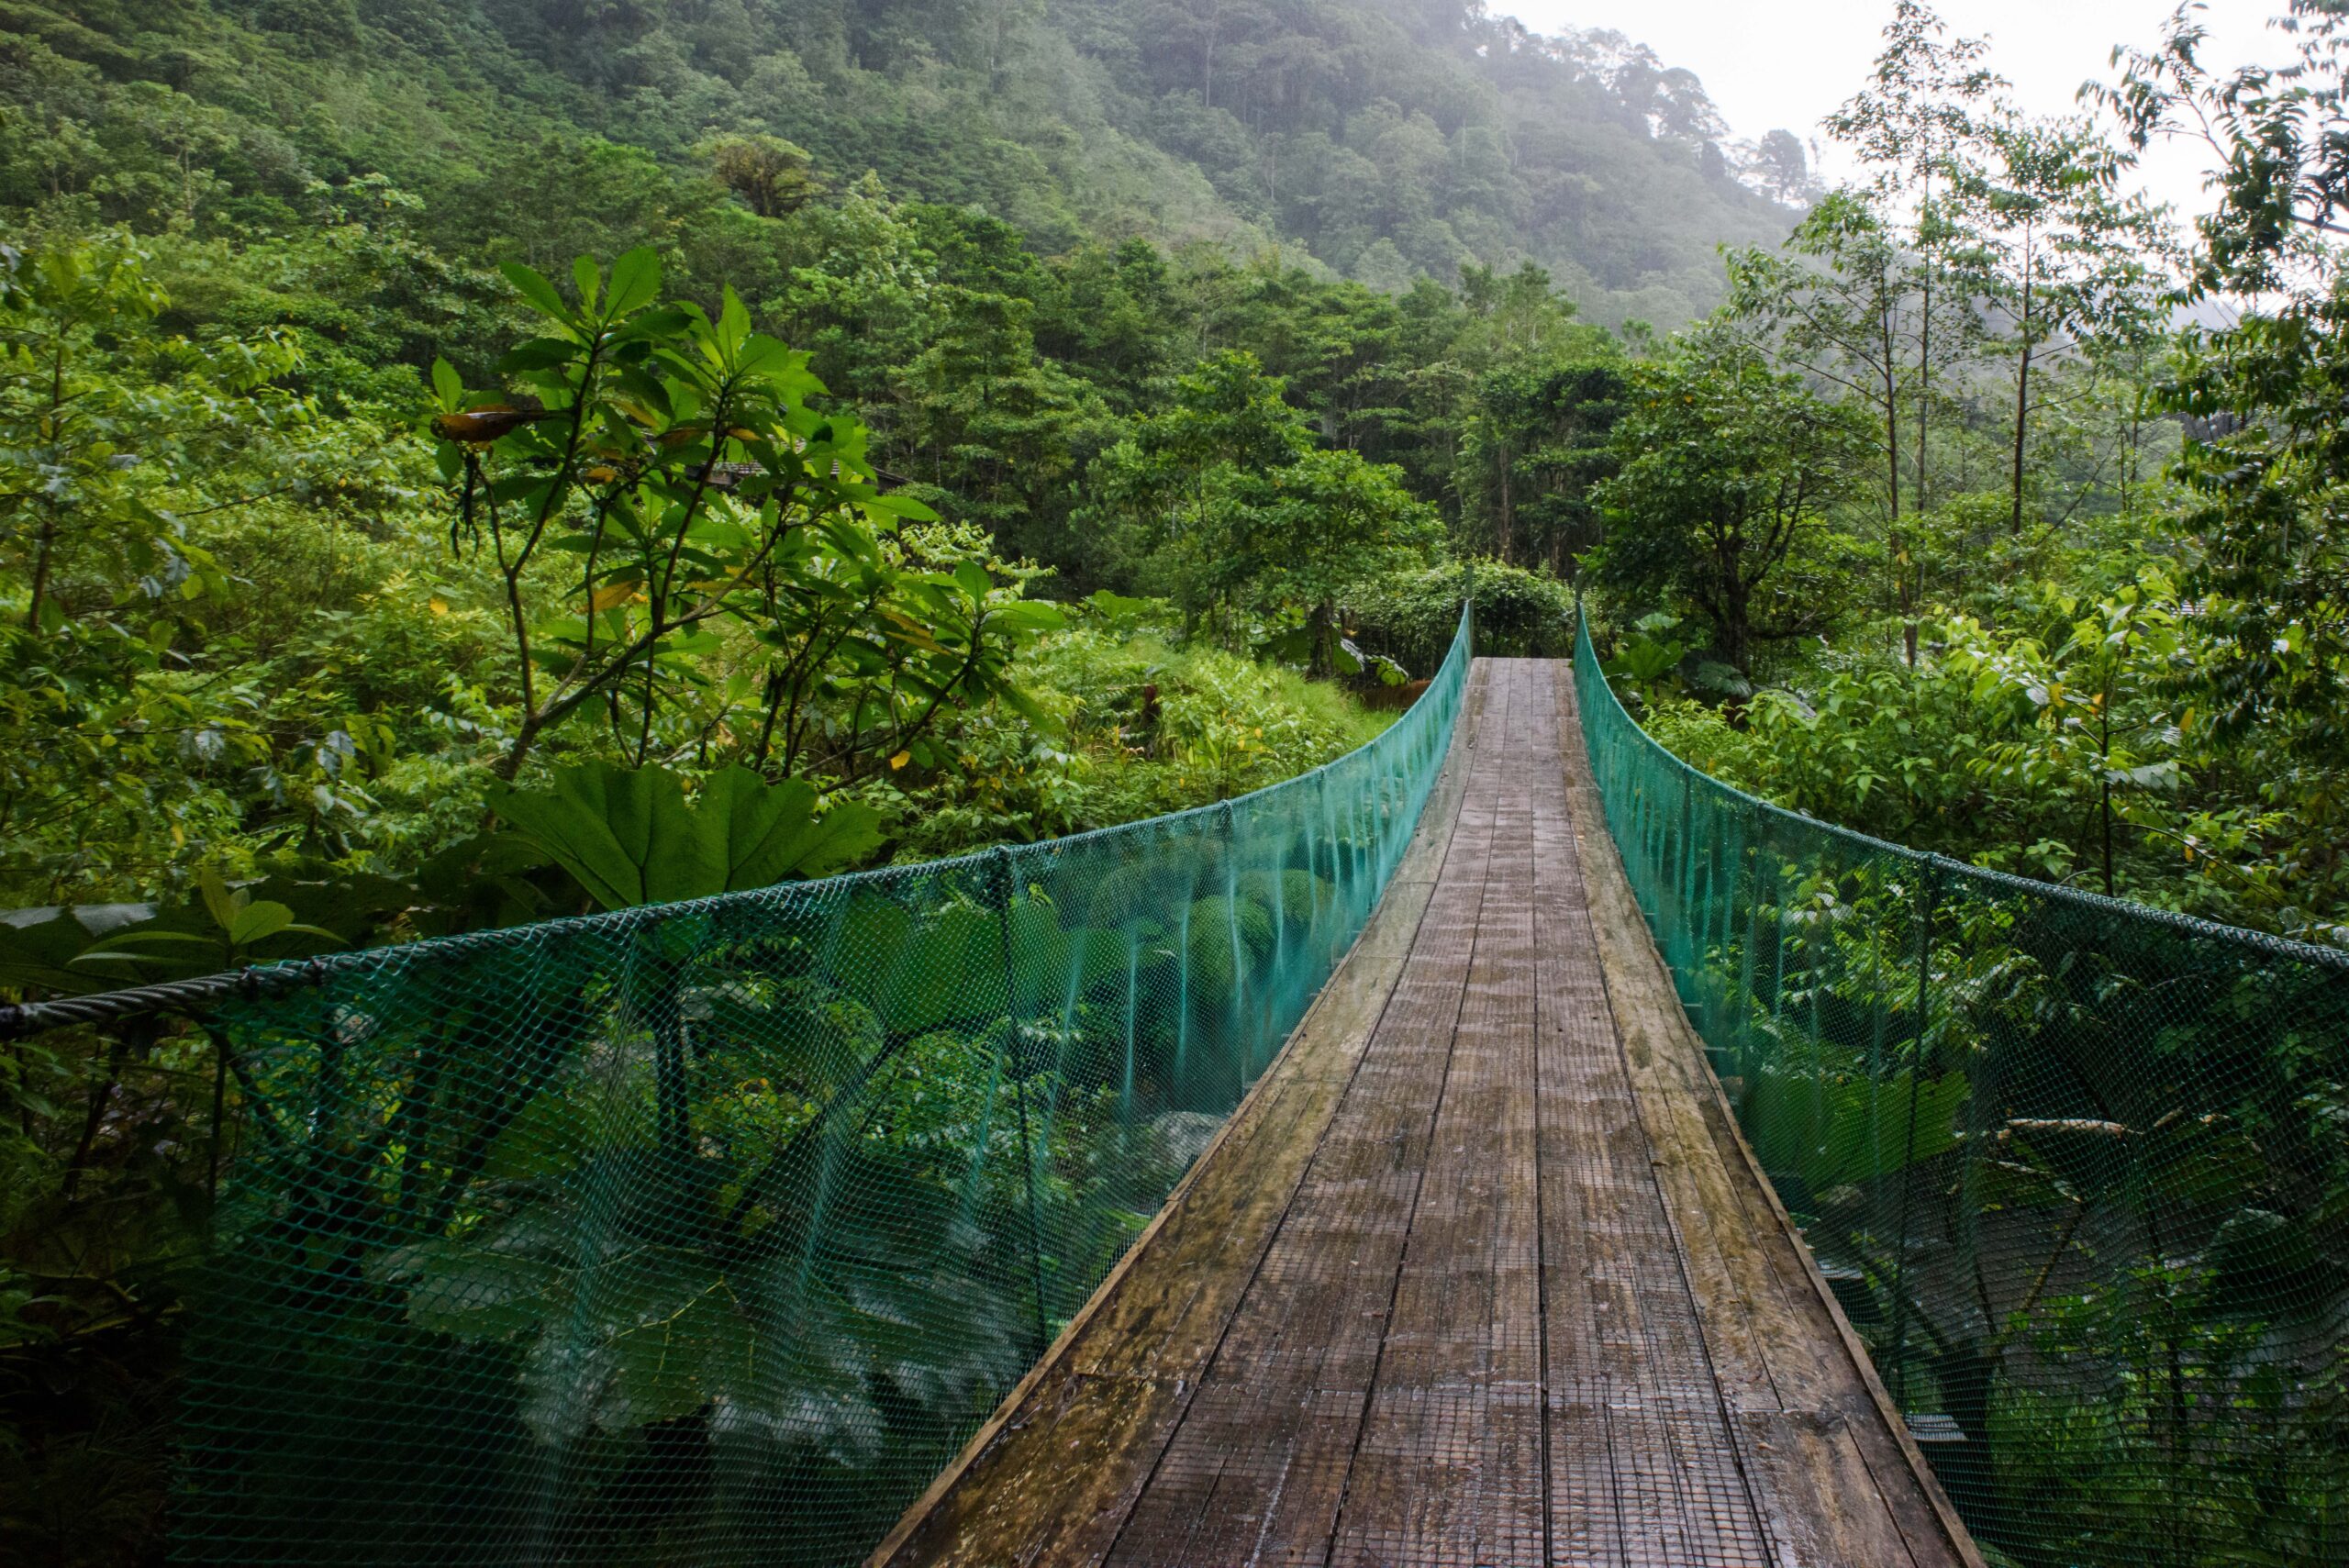 A bridge over a rainforest in Costa Rica.